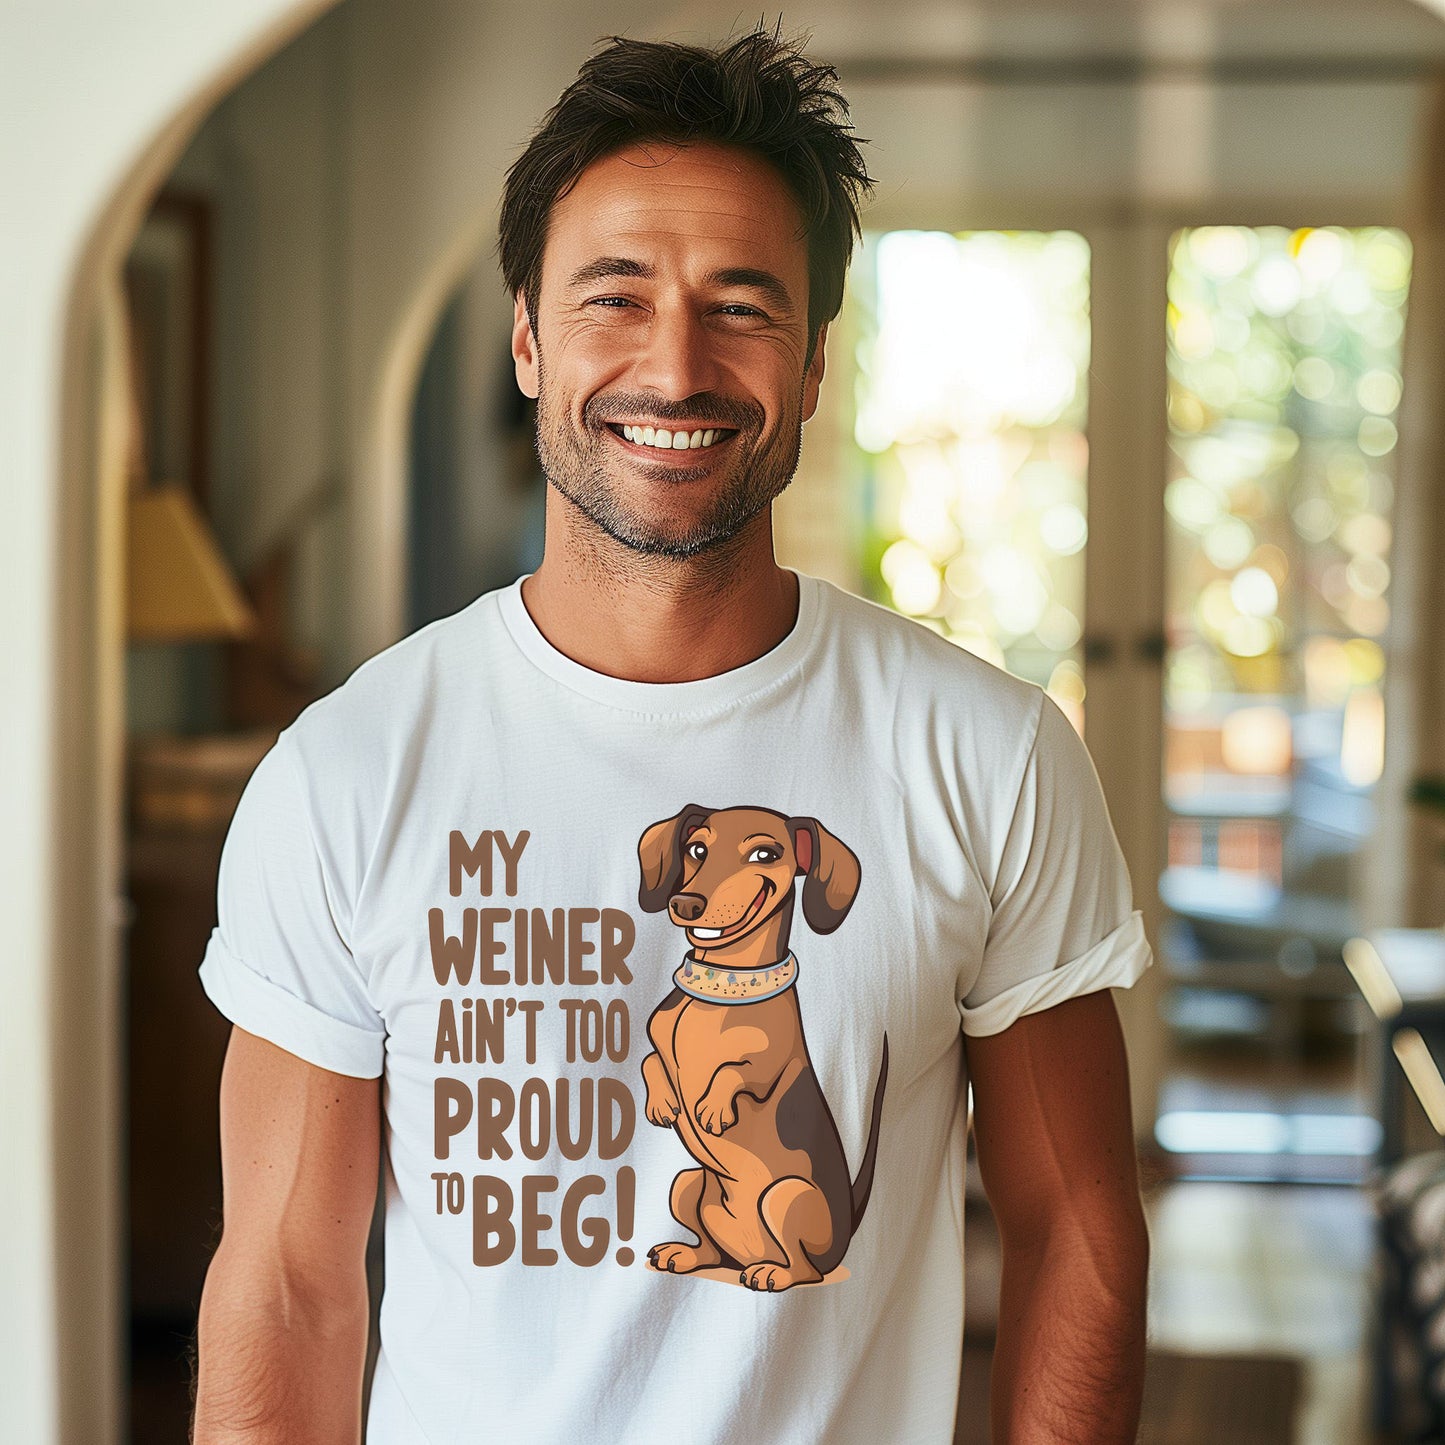 Funny Dachshund Weiner Dog T-Shirt, My Weiner ain't too proud to Beg, Funny Daschund Weiner Dog T-Shirt, Funny Weiner Dog T-Shirt, Daschund